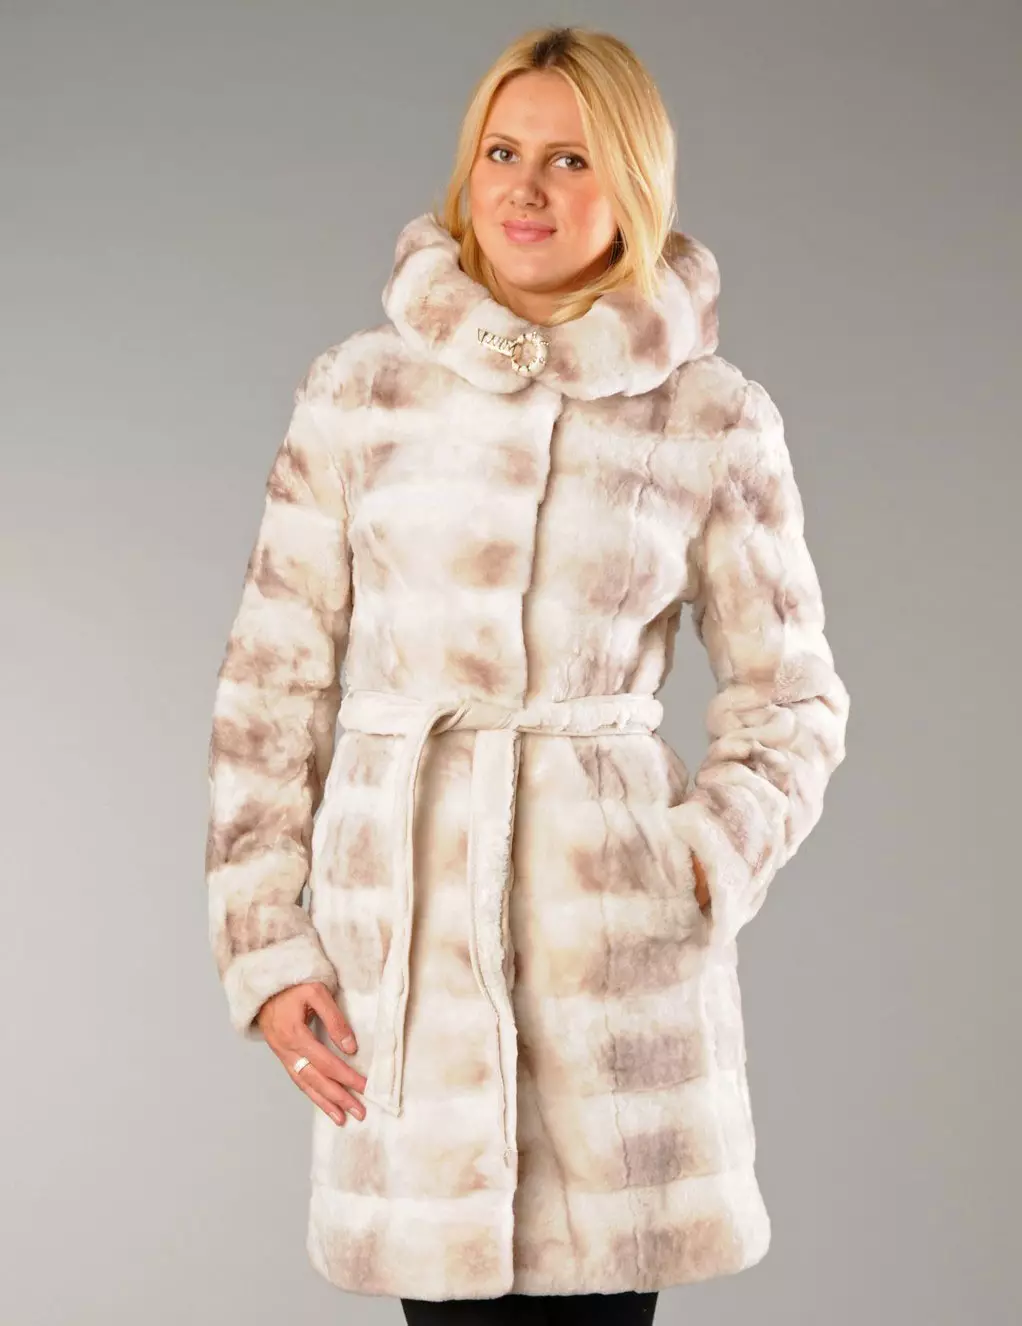 Fur coat mula sa mink pieces (70 mga larawan): Mga Review tungkol sa mink coat pieces habang nagkakahalaga ito 14423_15